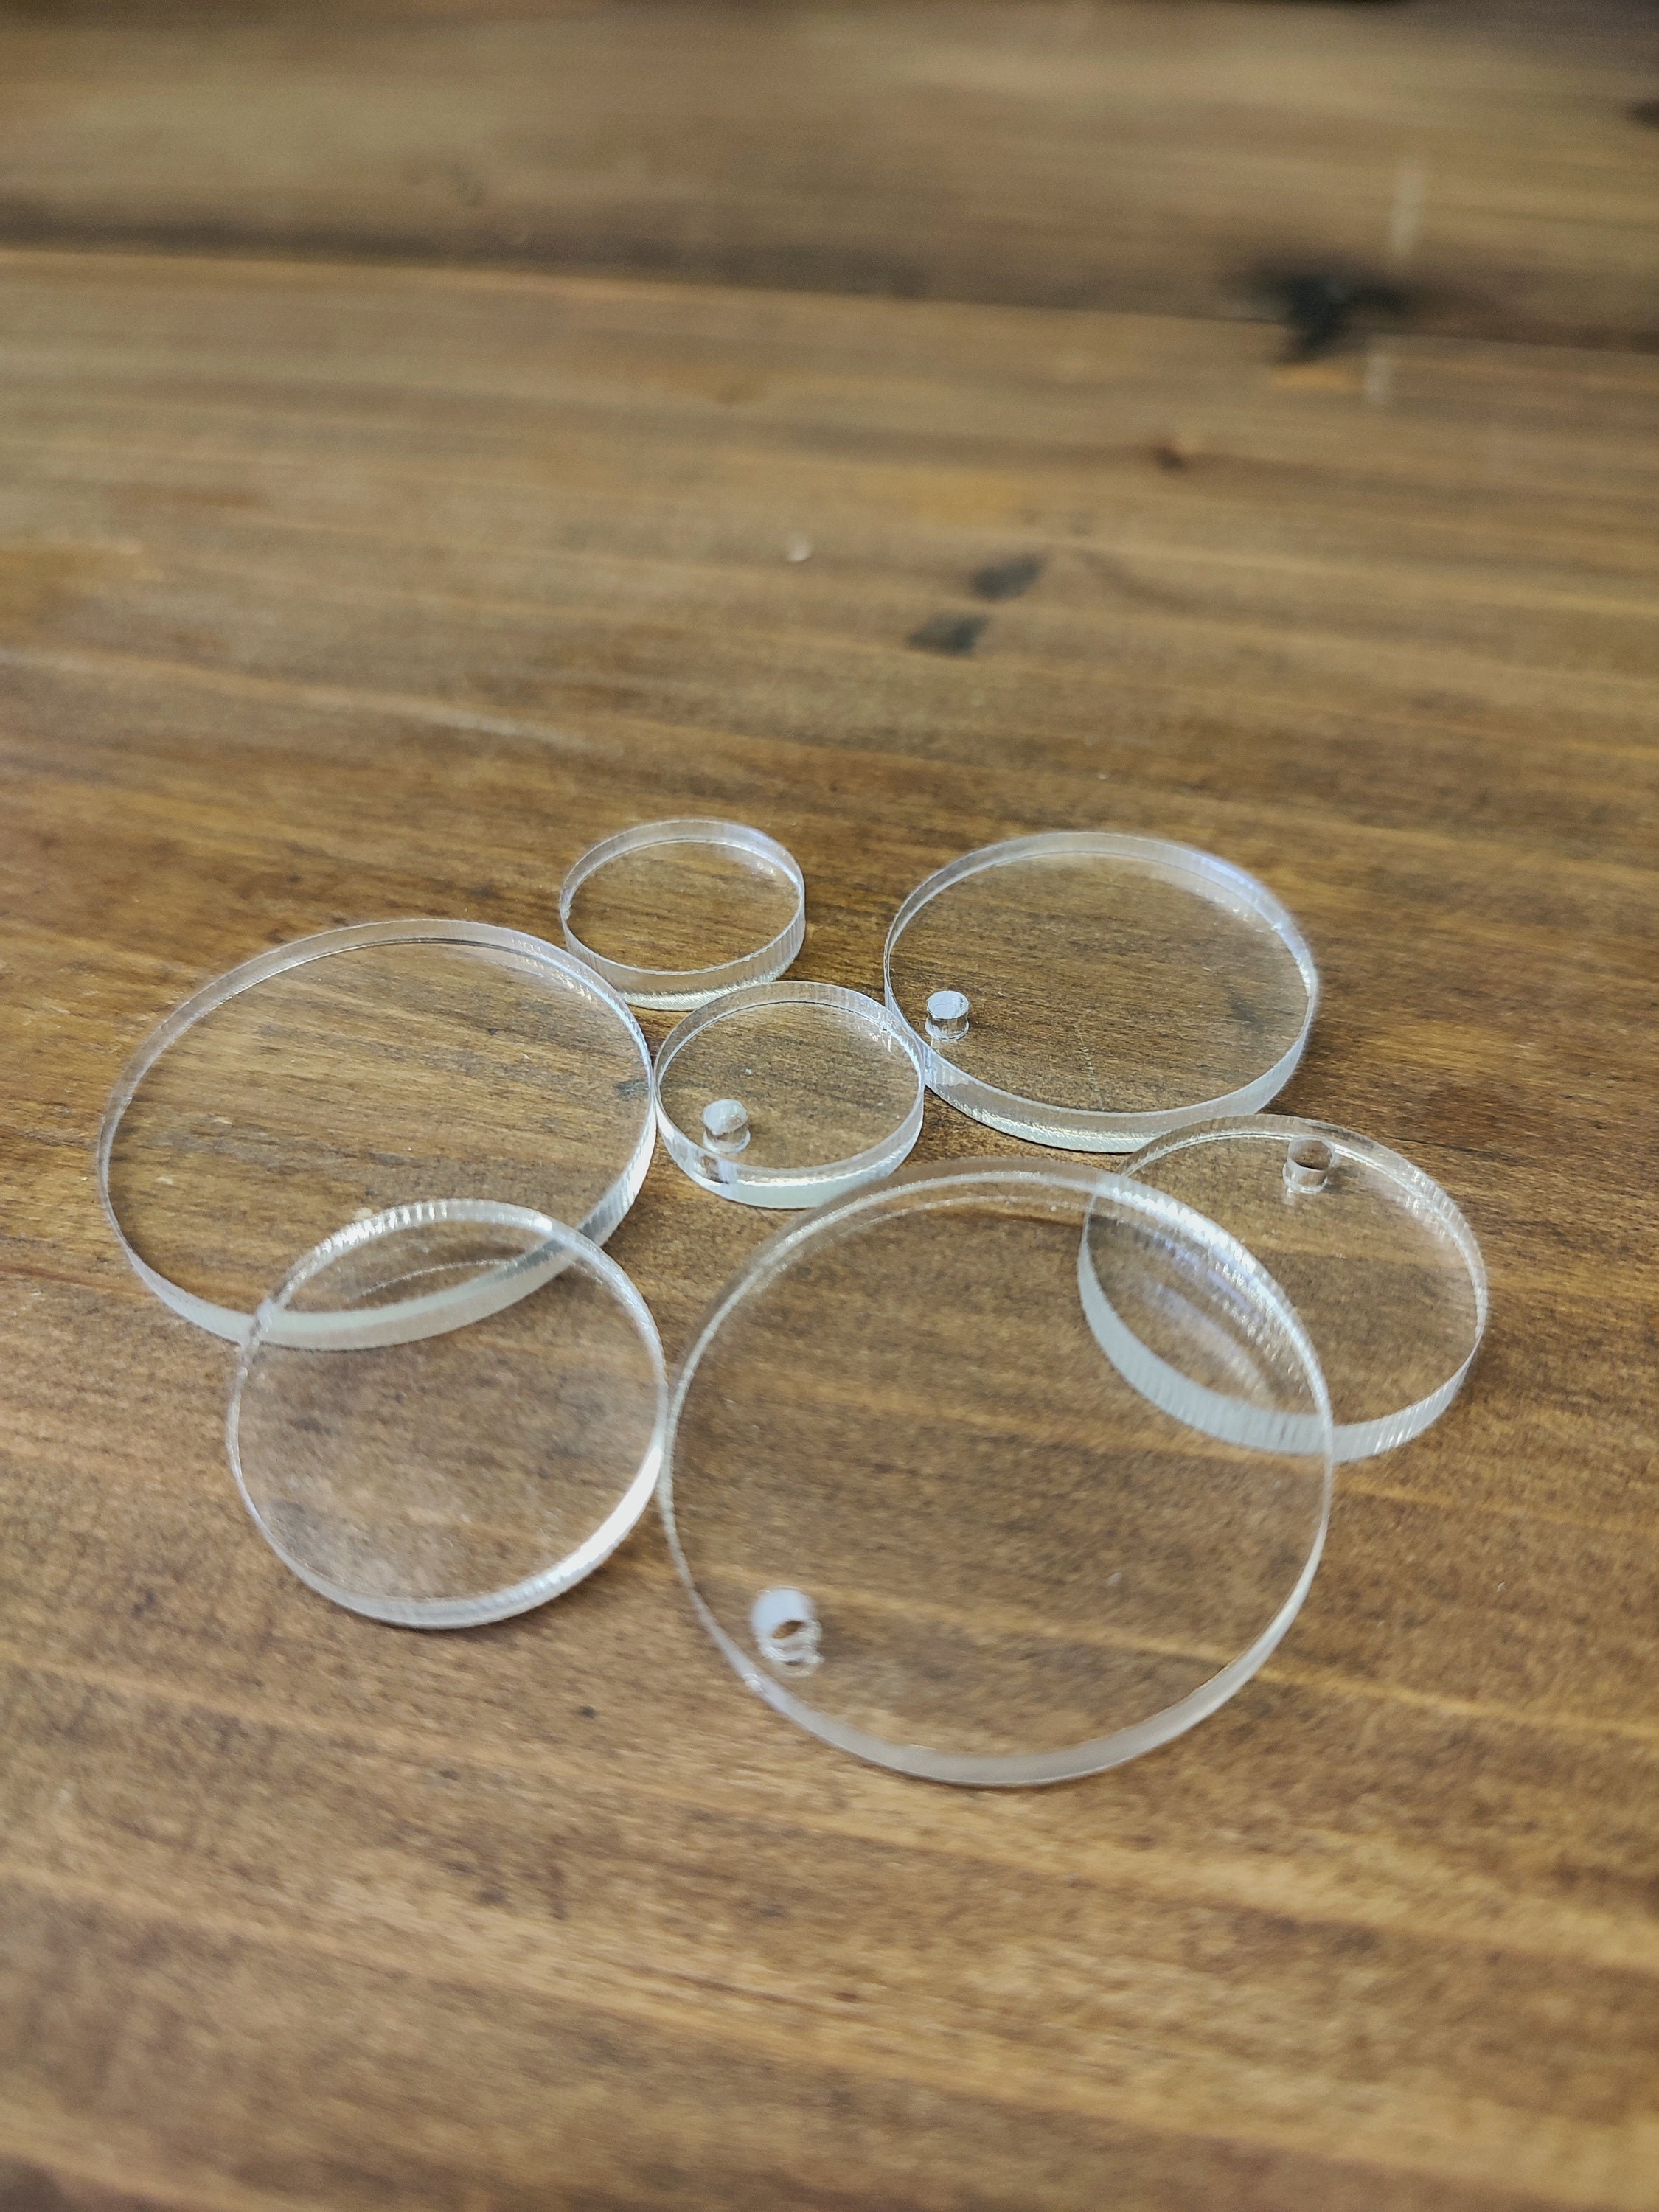 Cercle Disque Rond en Plexi Polycarbonate - Verre Acrylique Transparent -  PMMA XT - Format Rond Différentes Tailles Disponible - 20 cm - Épaisseur 4